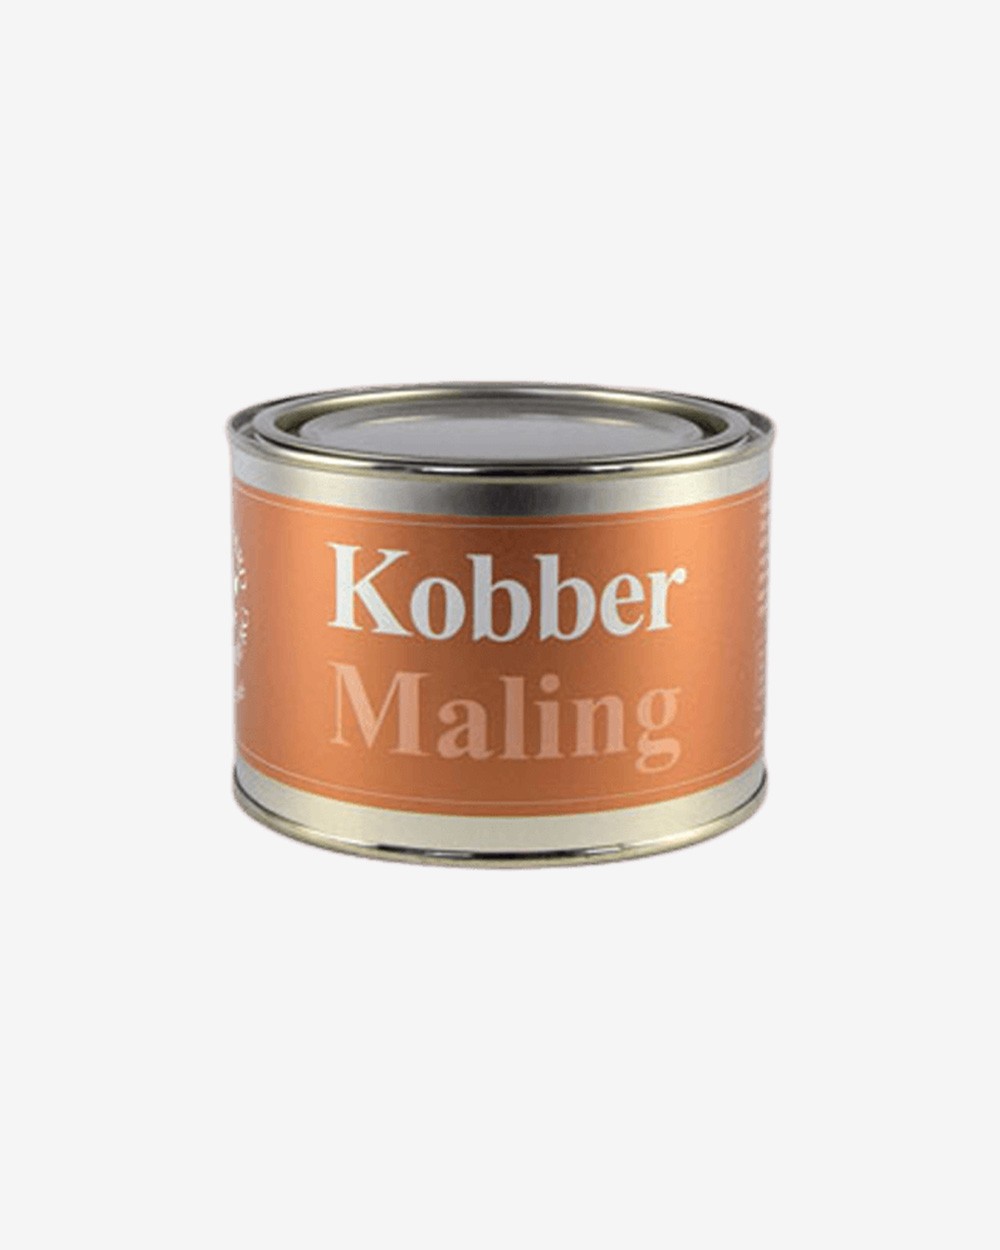 Kobbermaling